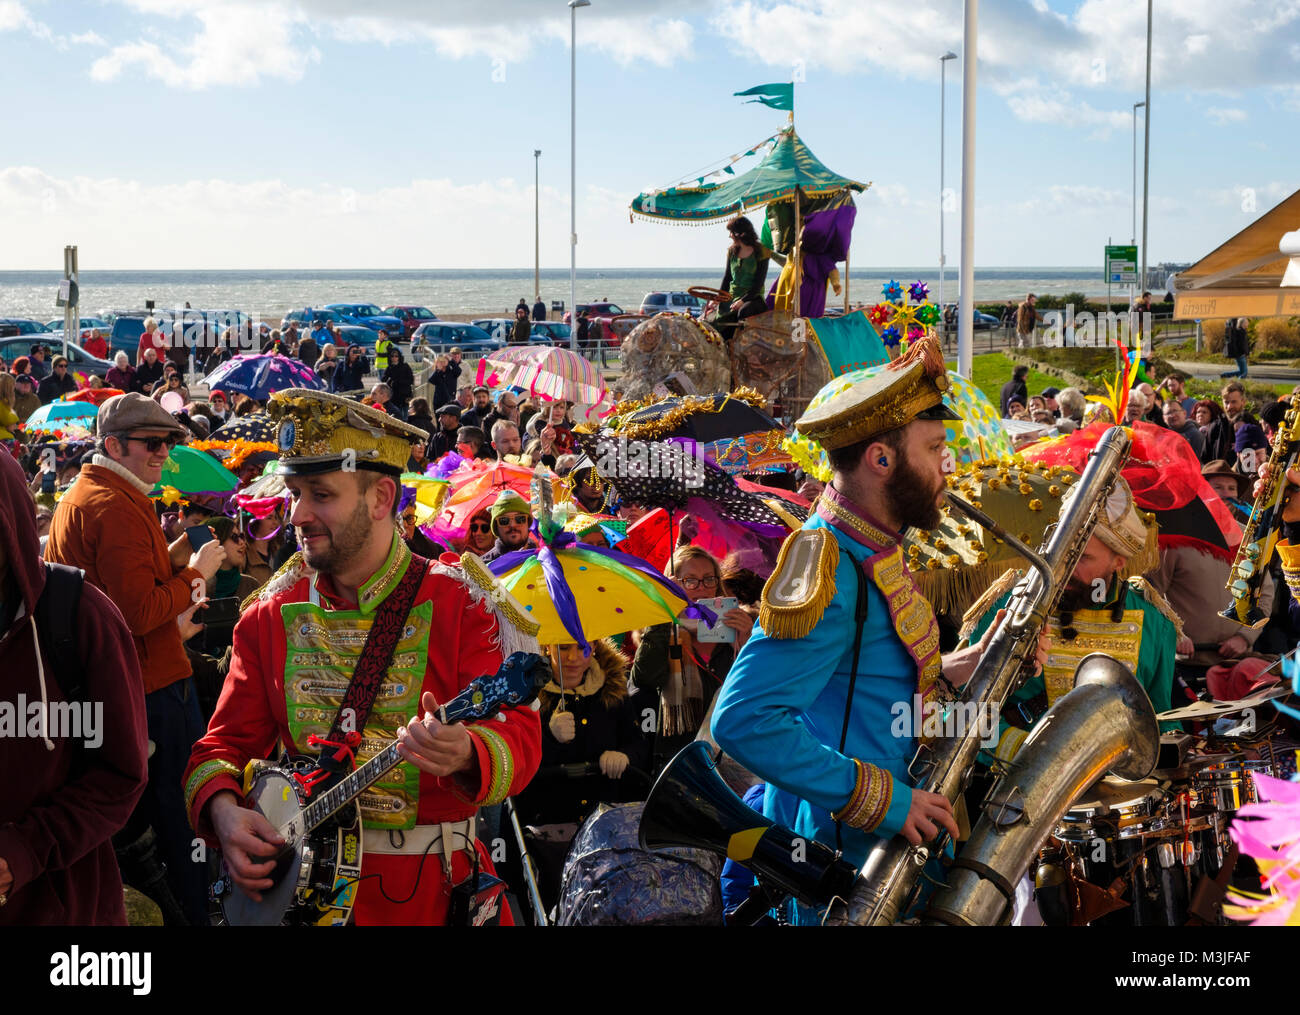 Hastings, East Sussex, UK. 11. Feb 2018. Super sonnigen Tag für die Parade der eingerichteten Sonnenschirme am Fetten Dienstag / Mardi Gras Karneval. Stockfoto